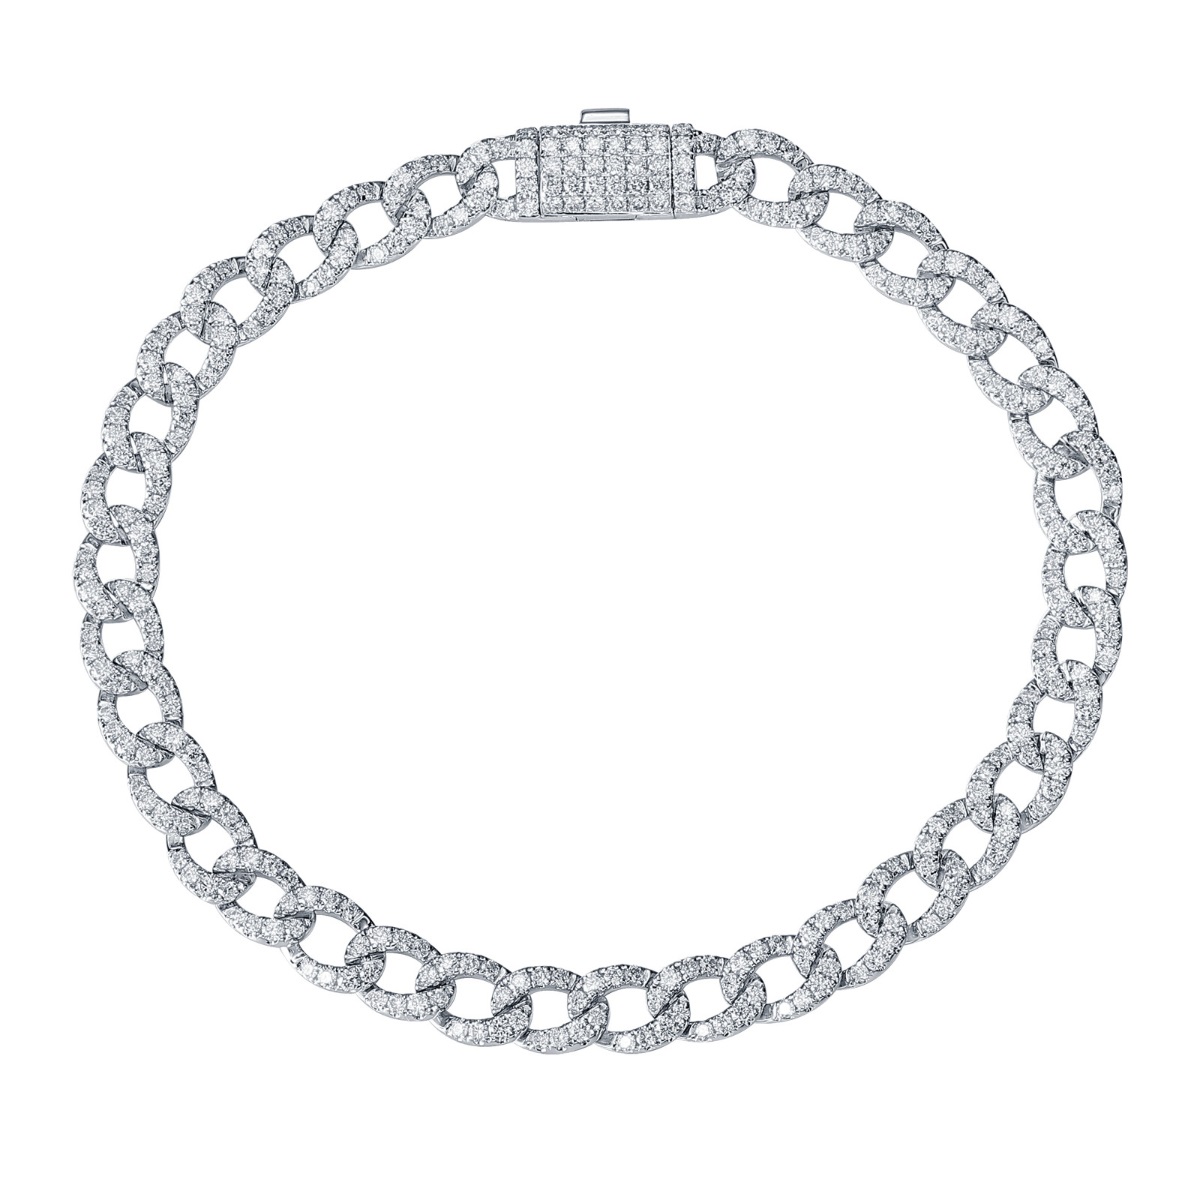 BL36483WHT – 18K White Gold  Diamond Bracelet, 2.66 TCW